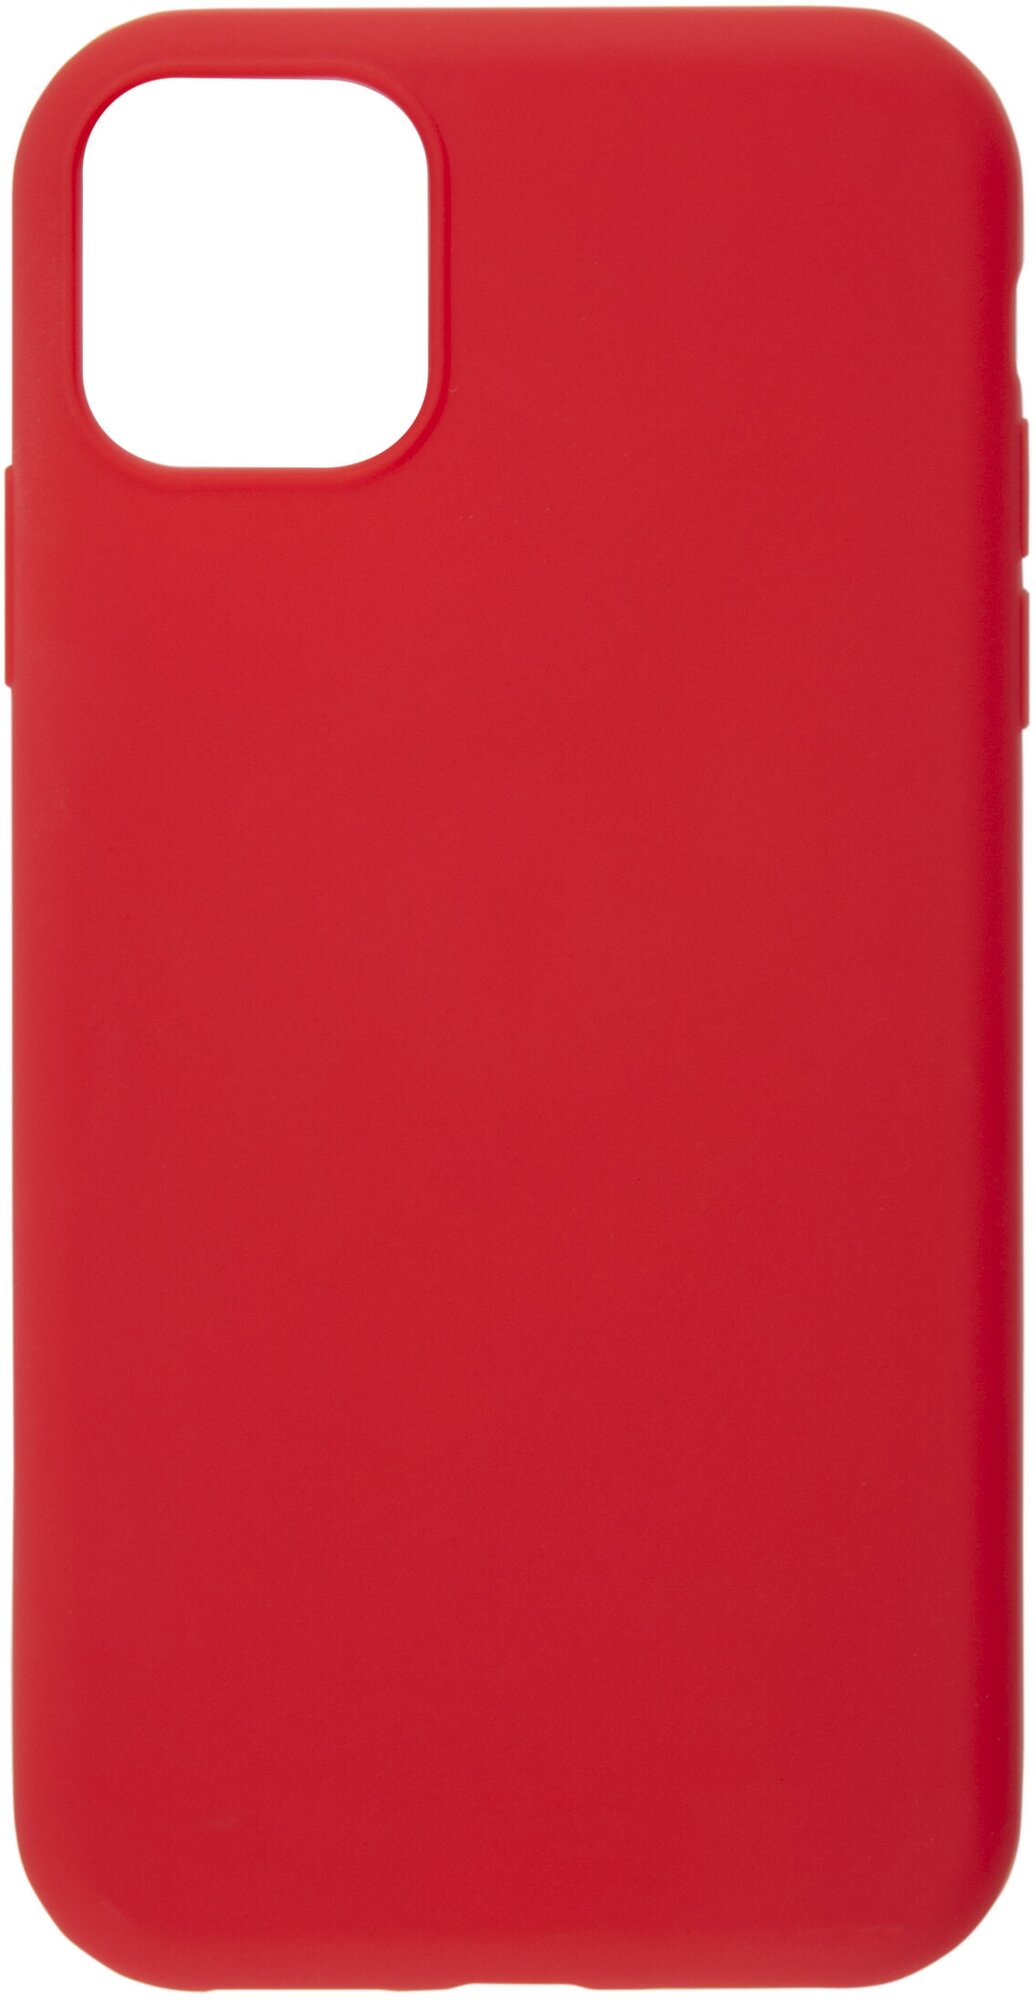 Защитный чехол для iPhone 11 Pro Max (6.5")/Защита от царапин для телефона Айфон 11 Про Макс (6.5")/Бампер/Накладка/Защитный чехол, красный